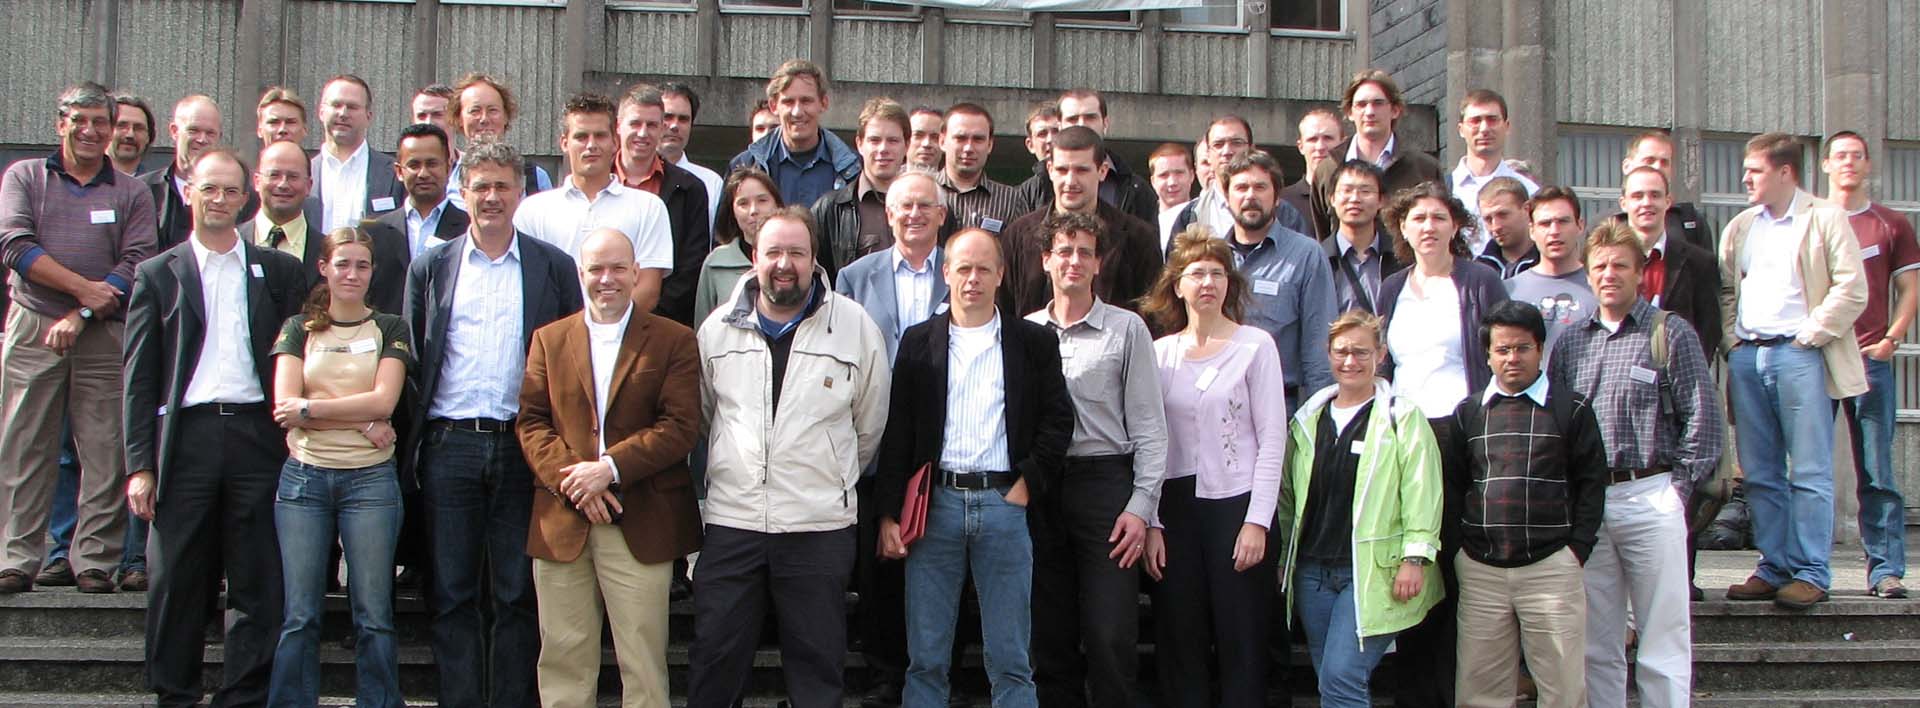 CRDS participants 2006